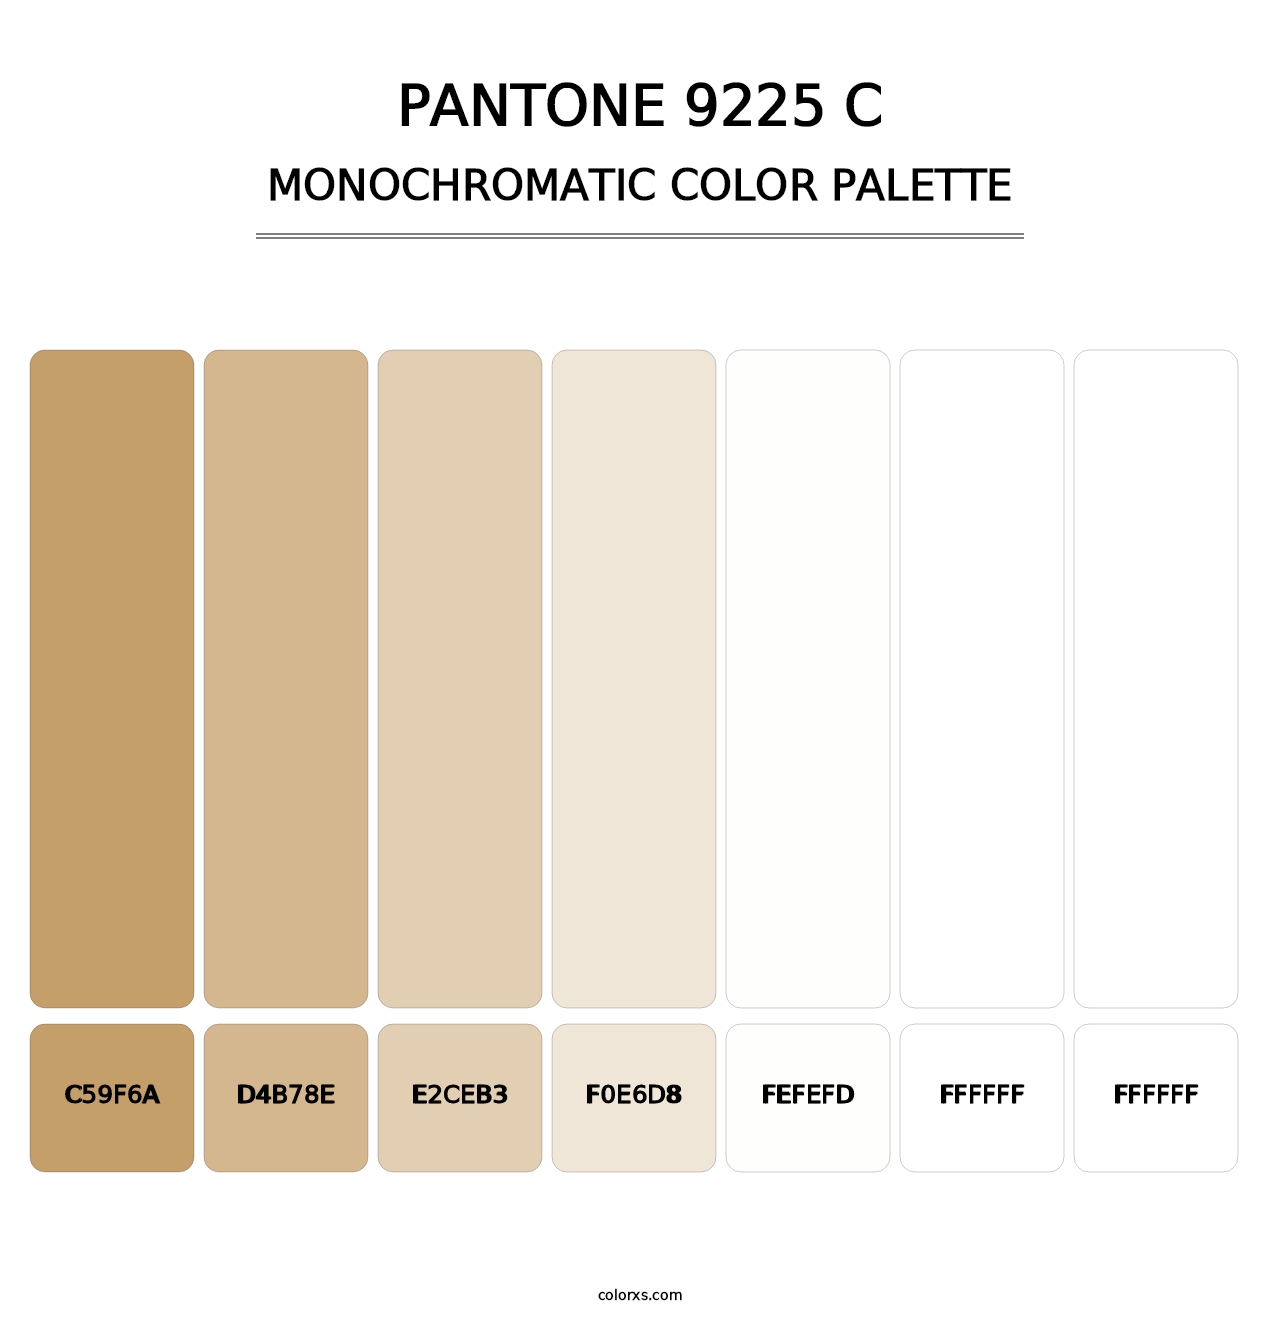 PANTONE 9225 C - Monochromatic Color Palette